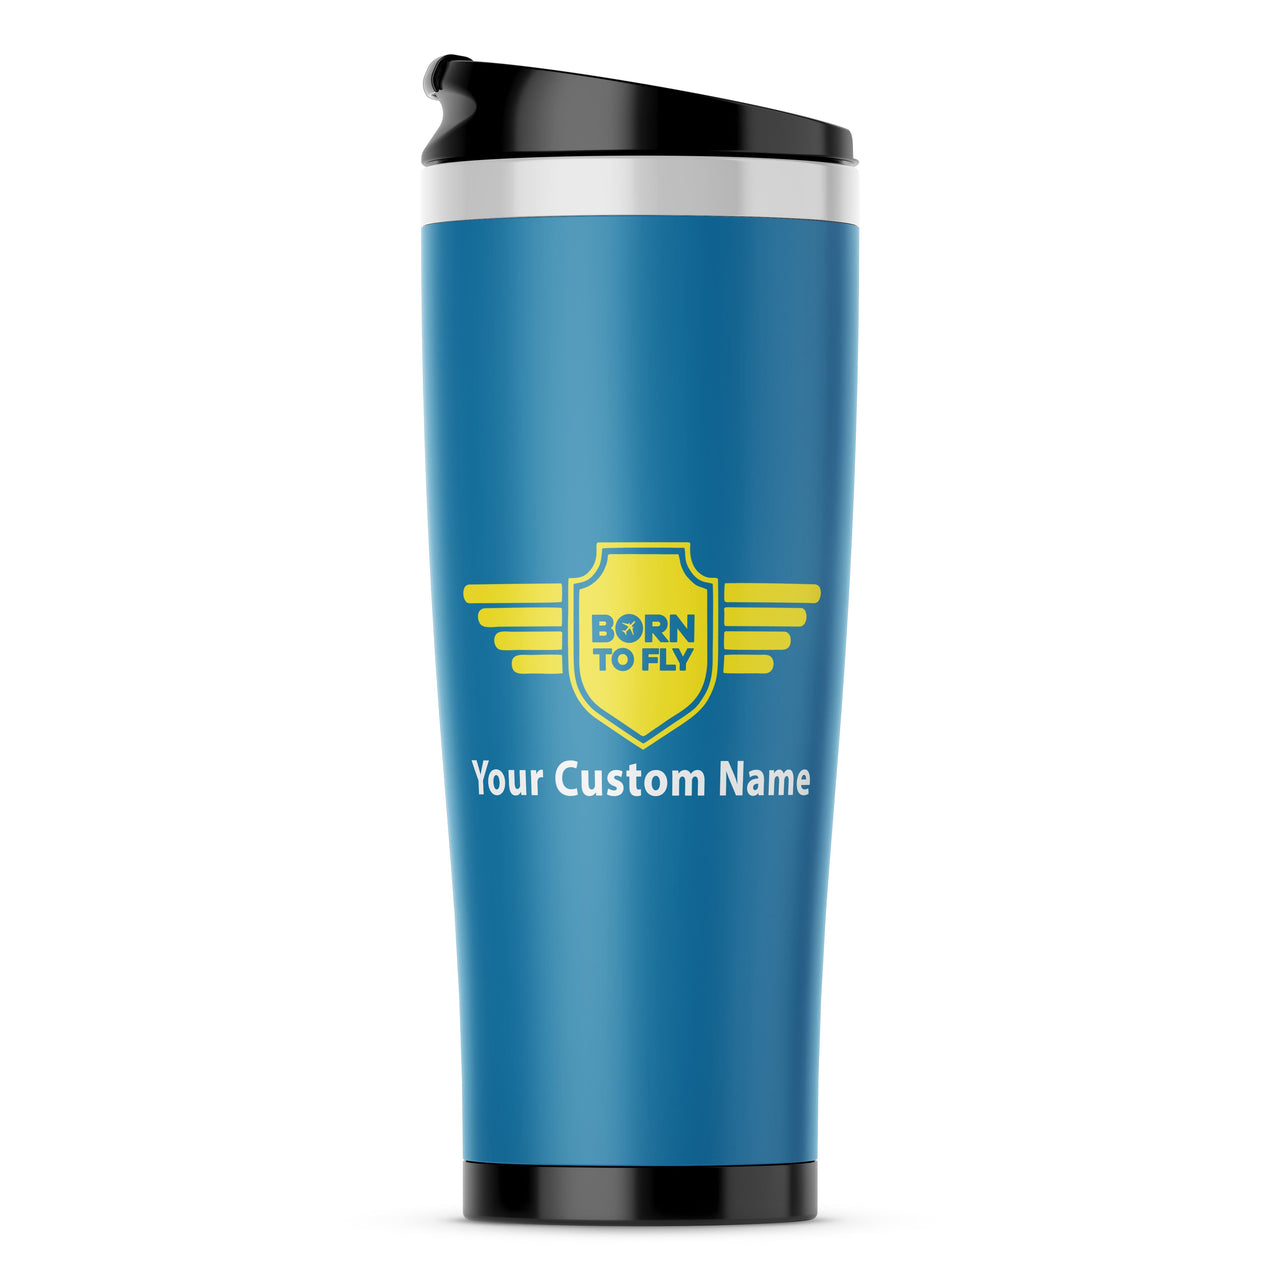 Custom Name "Badge 5" Designed Stainless Steel Travel Mugs